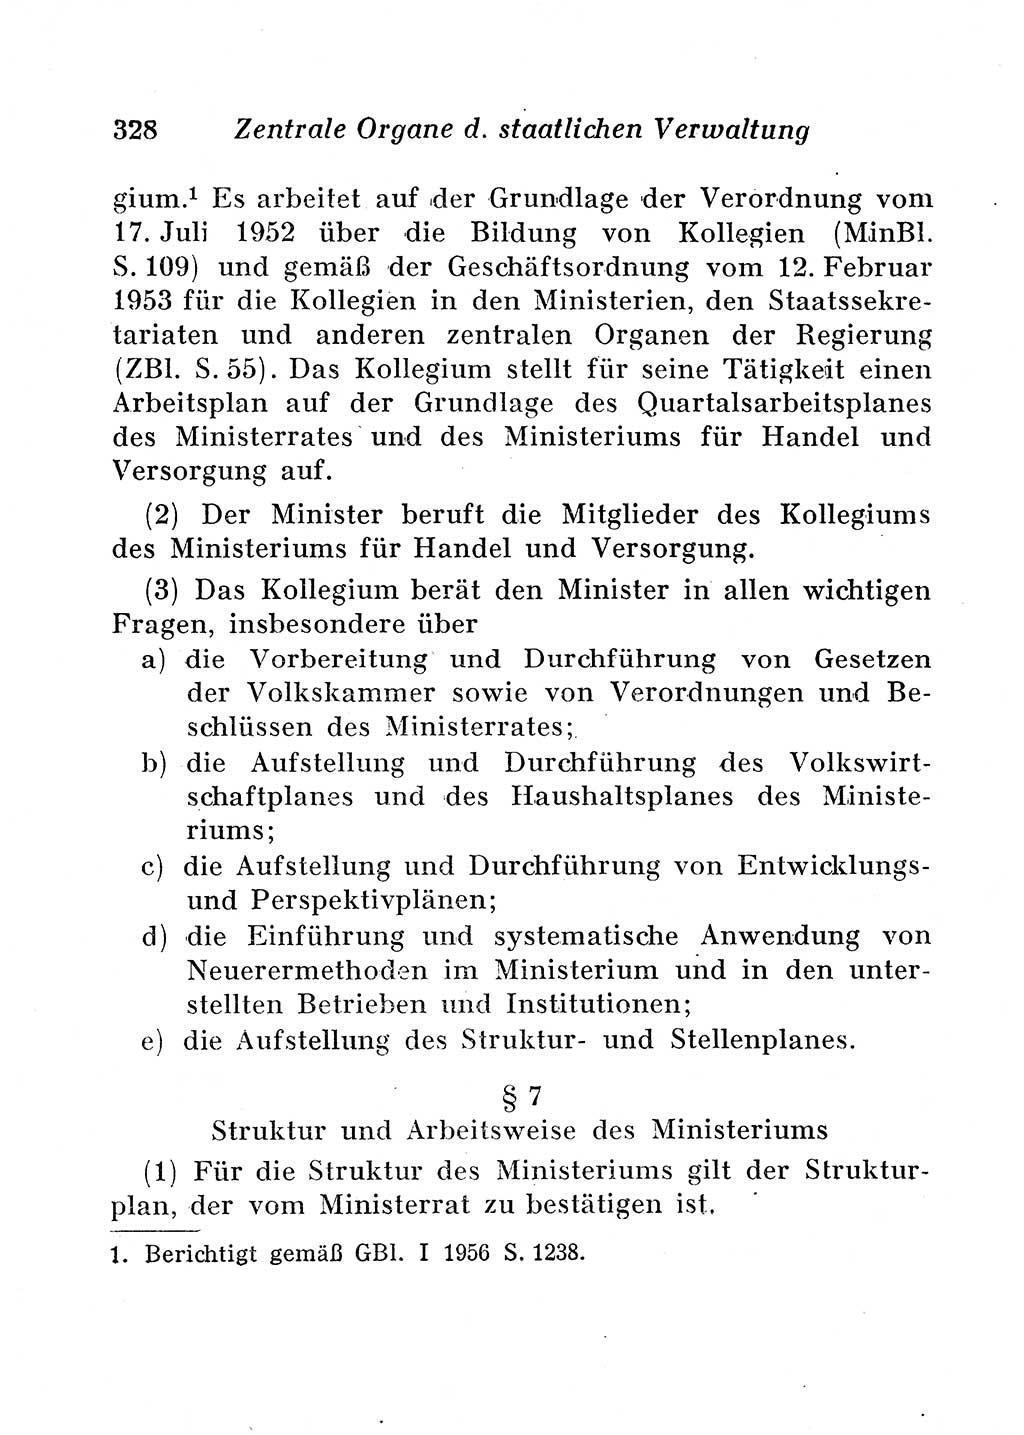 Staats- und verwaltungsrechtliche Gesetze der Deutschen Demokratischen Republik (DDR) 1958, Seite 328 (StVerwR Ges. DDR 1958, S. 328)